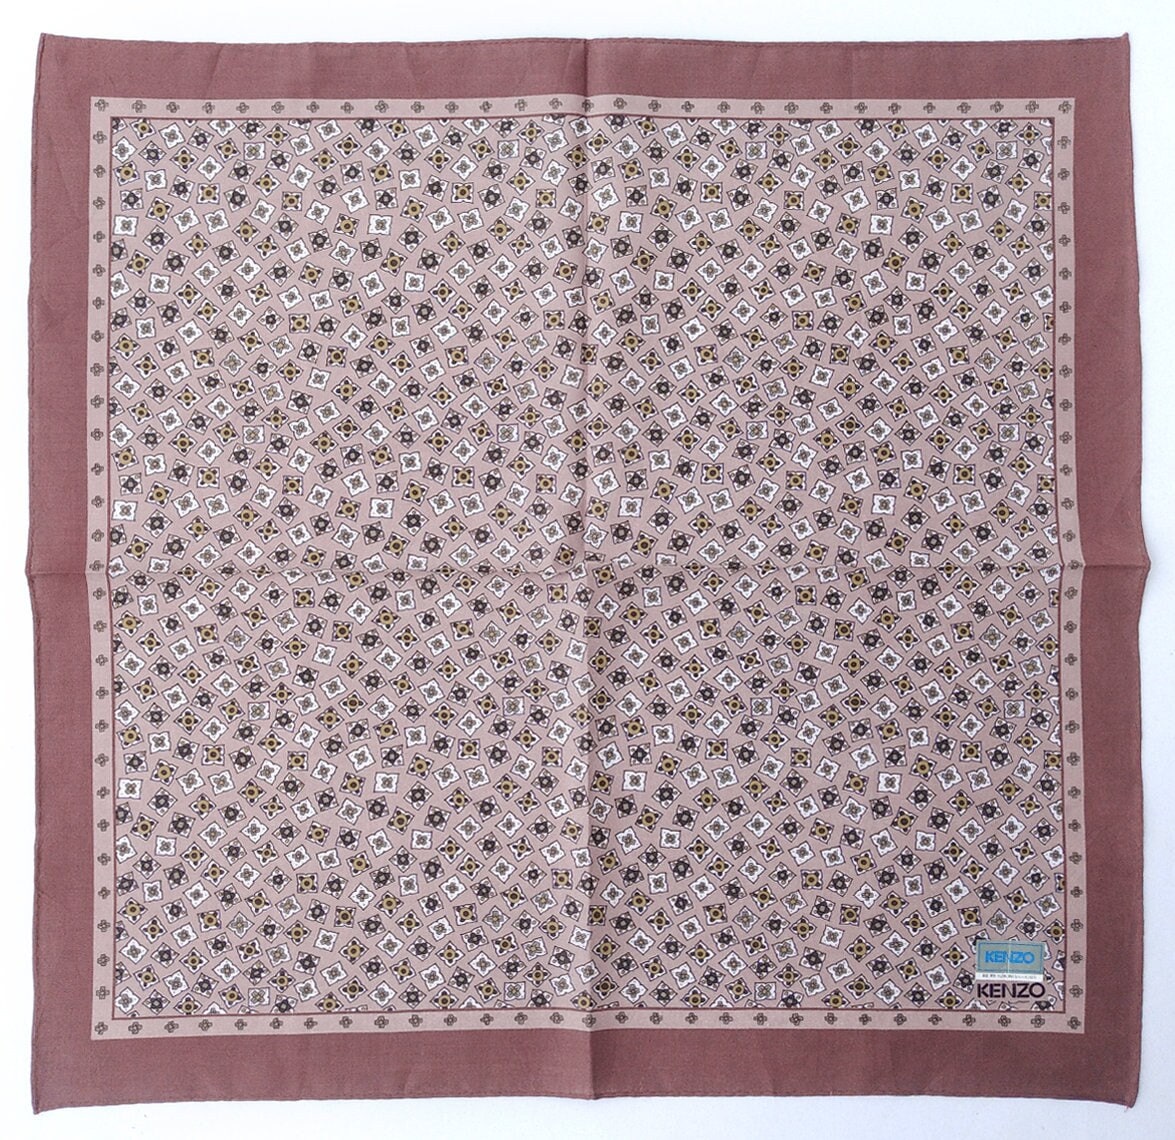 Kenzo Vintage Taschentuch 18.5"x 18" Zoll I Kostenlose Lieferung Bei Bestellung 35 Usd Kauft Einfach Mehrere Artikel Zusammen In von OrangeSodaPanda